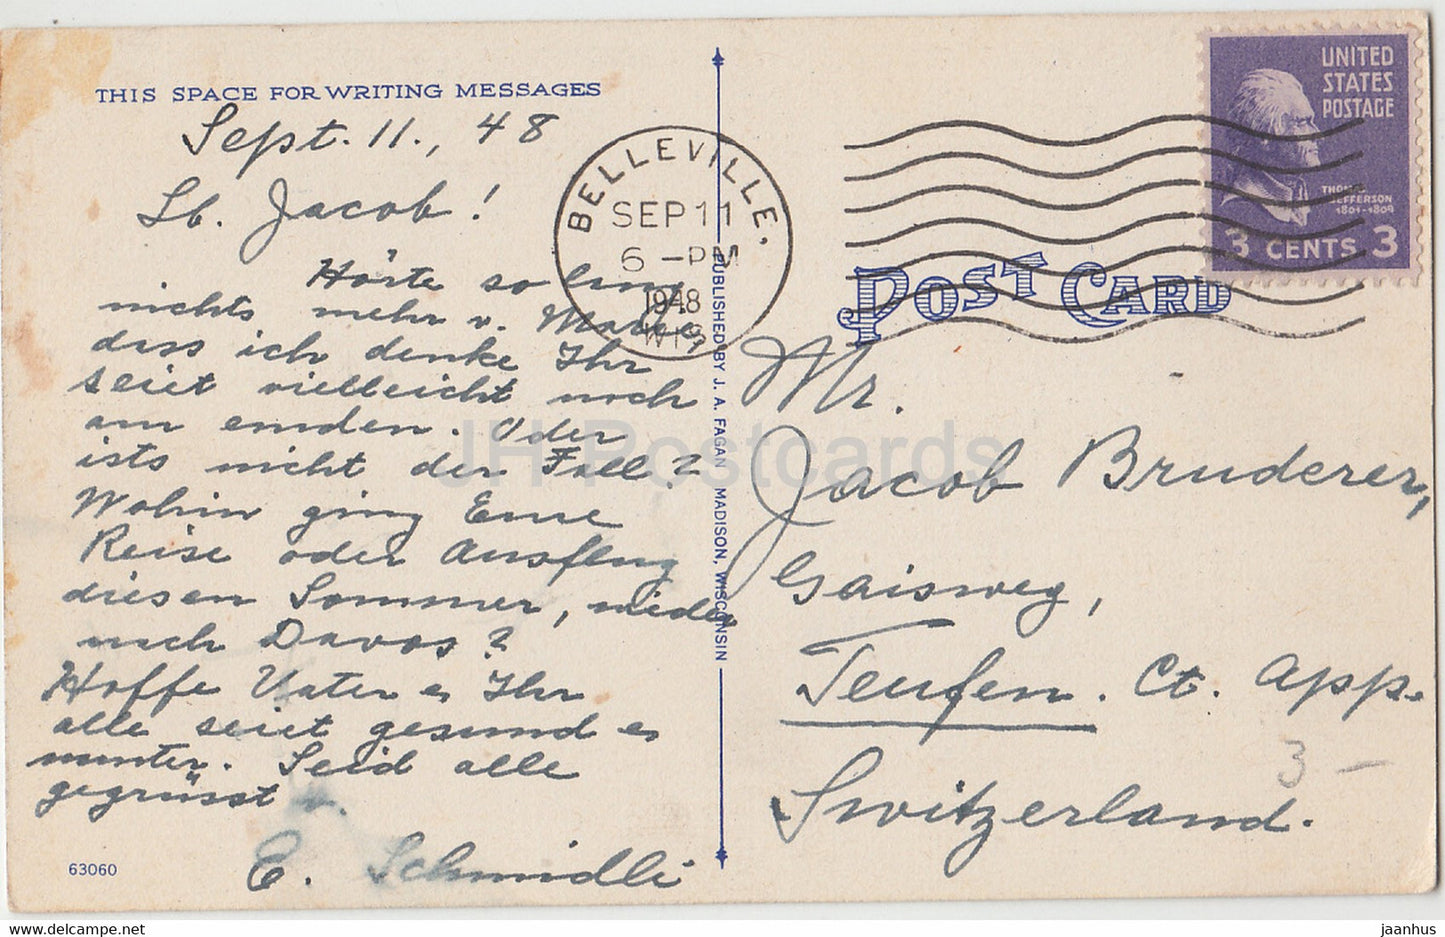 Madison - Vue des bâtiments universitaires depuis Agricultural Hall - carte postale ancienne - 1948 - États-Unis - USA - utilisé